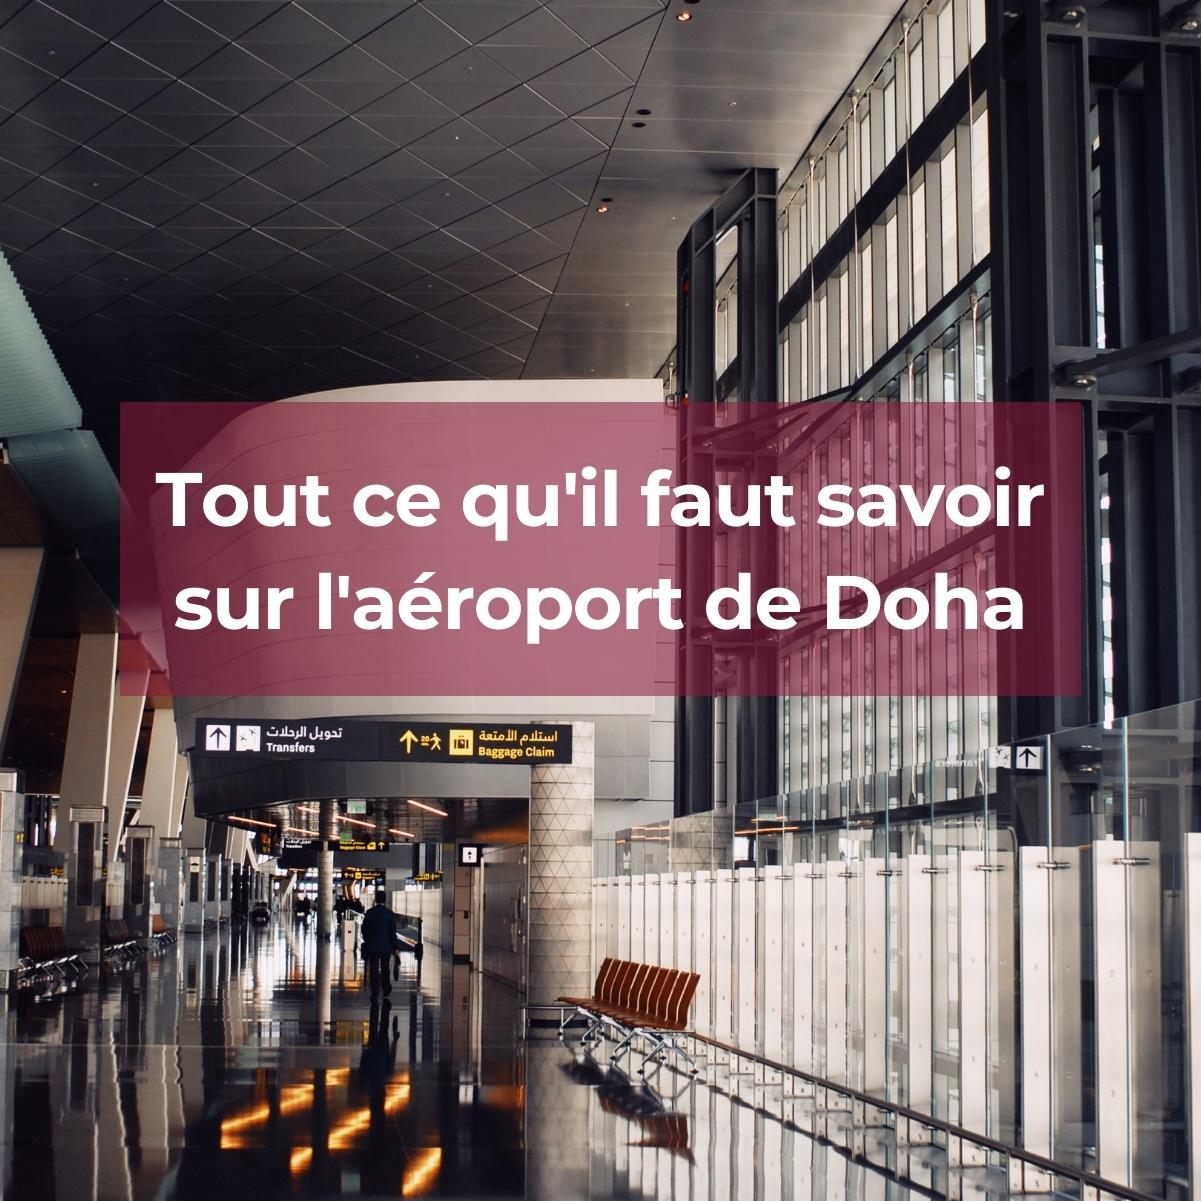 Tout ce qu'il faut savoir sur l'aéroport Doha